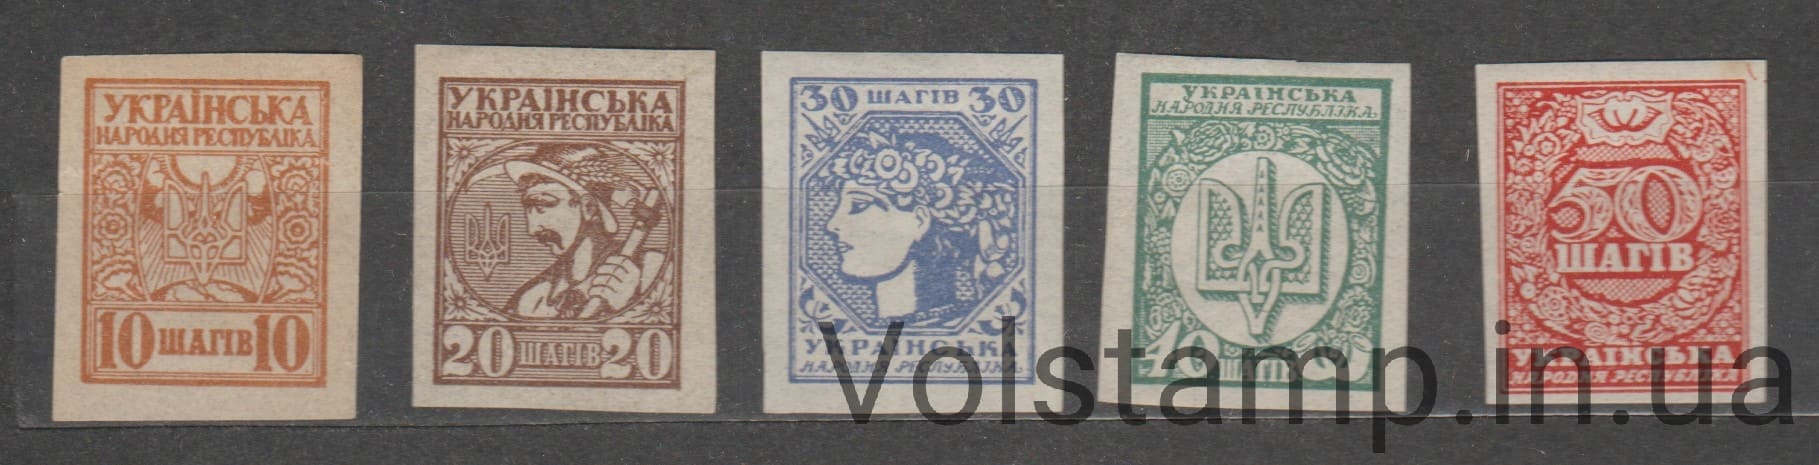 1918 Серия марок без перфорации Первые почтовые марки Украины MNH